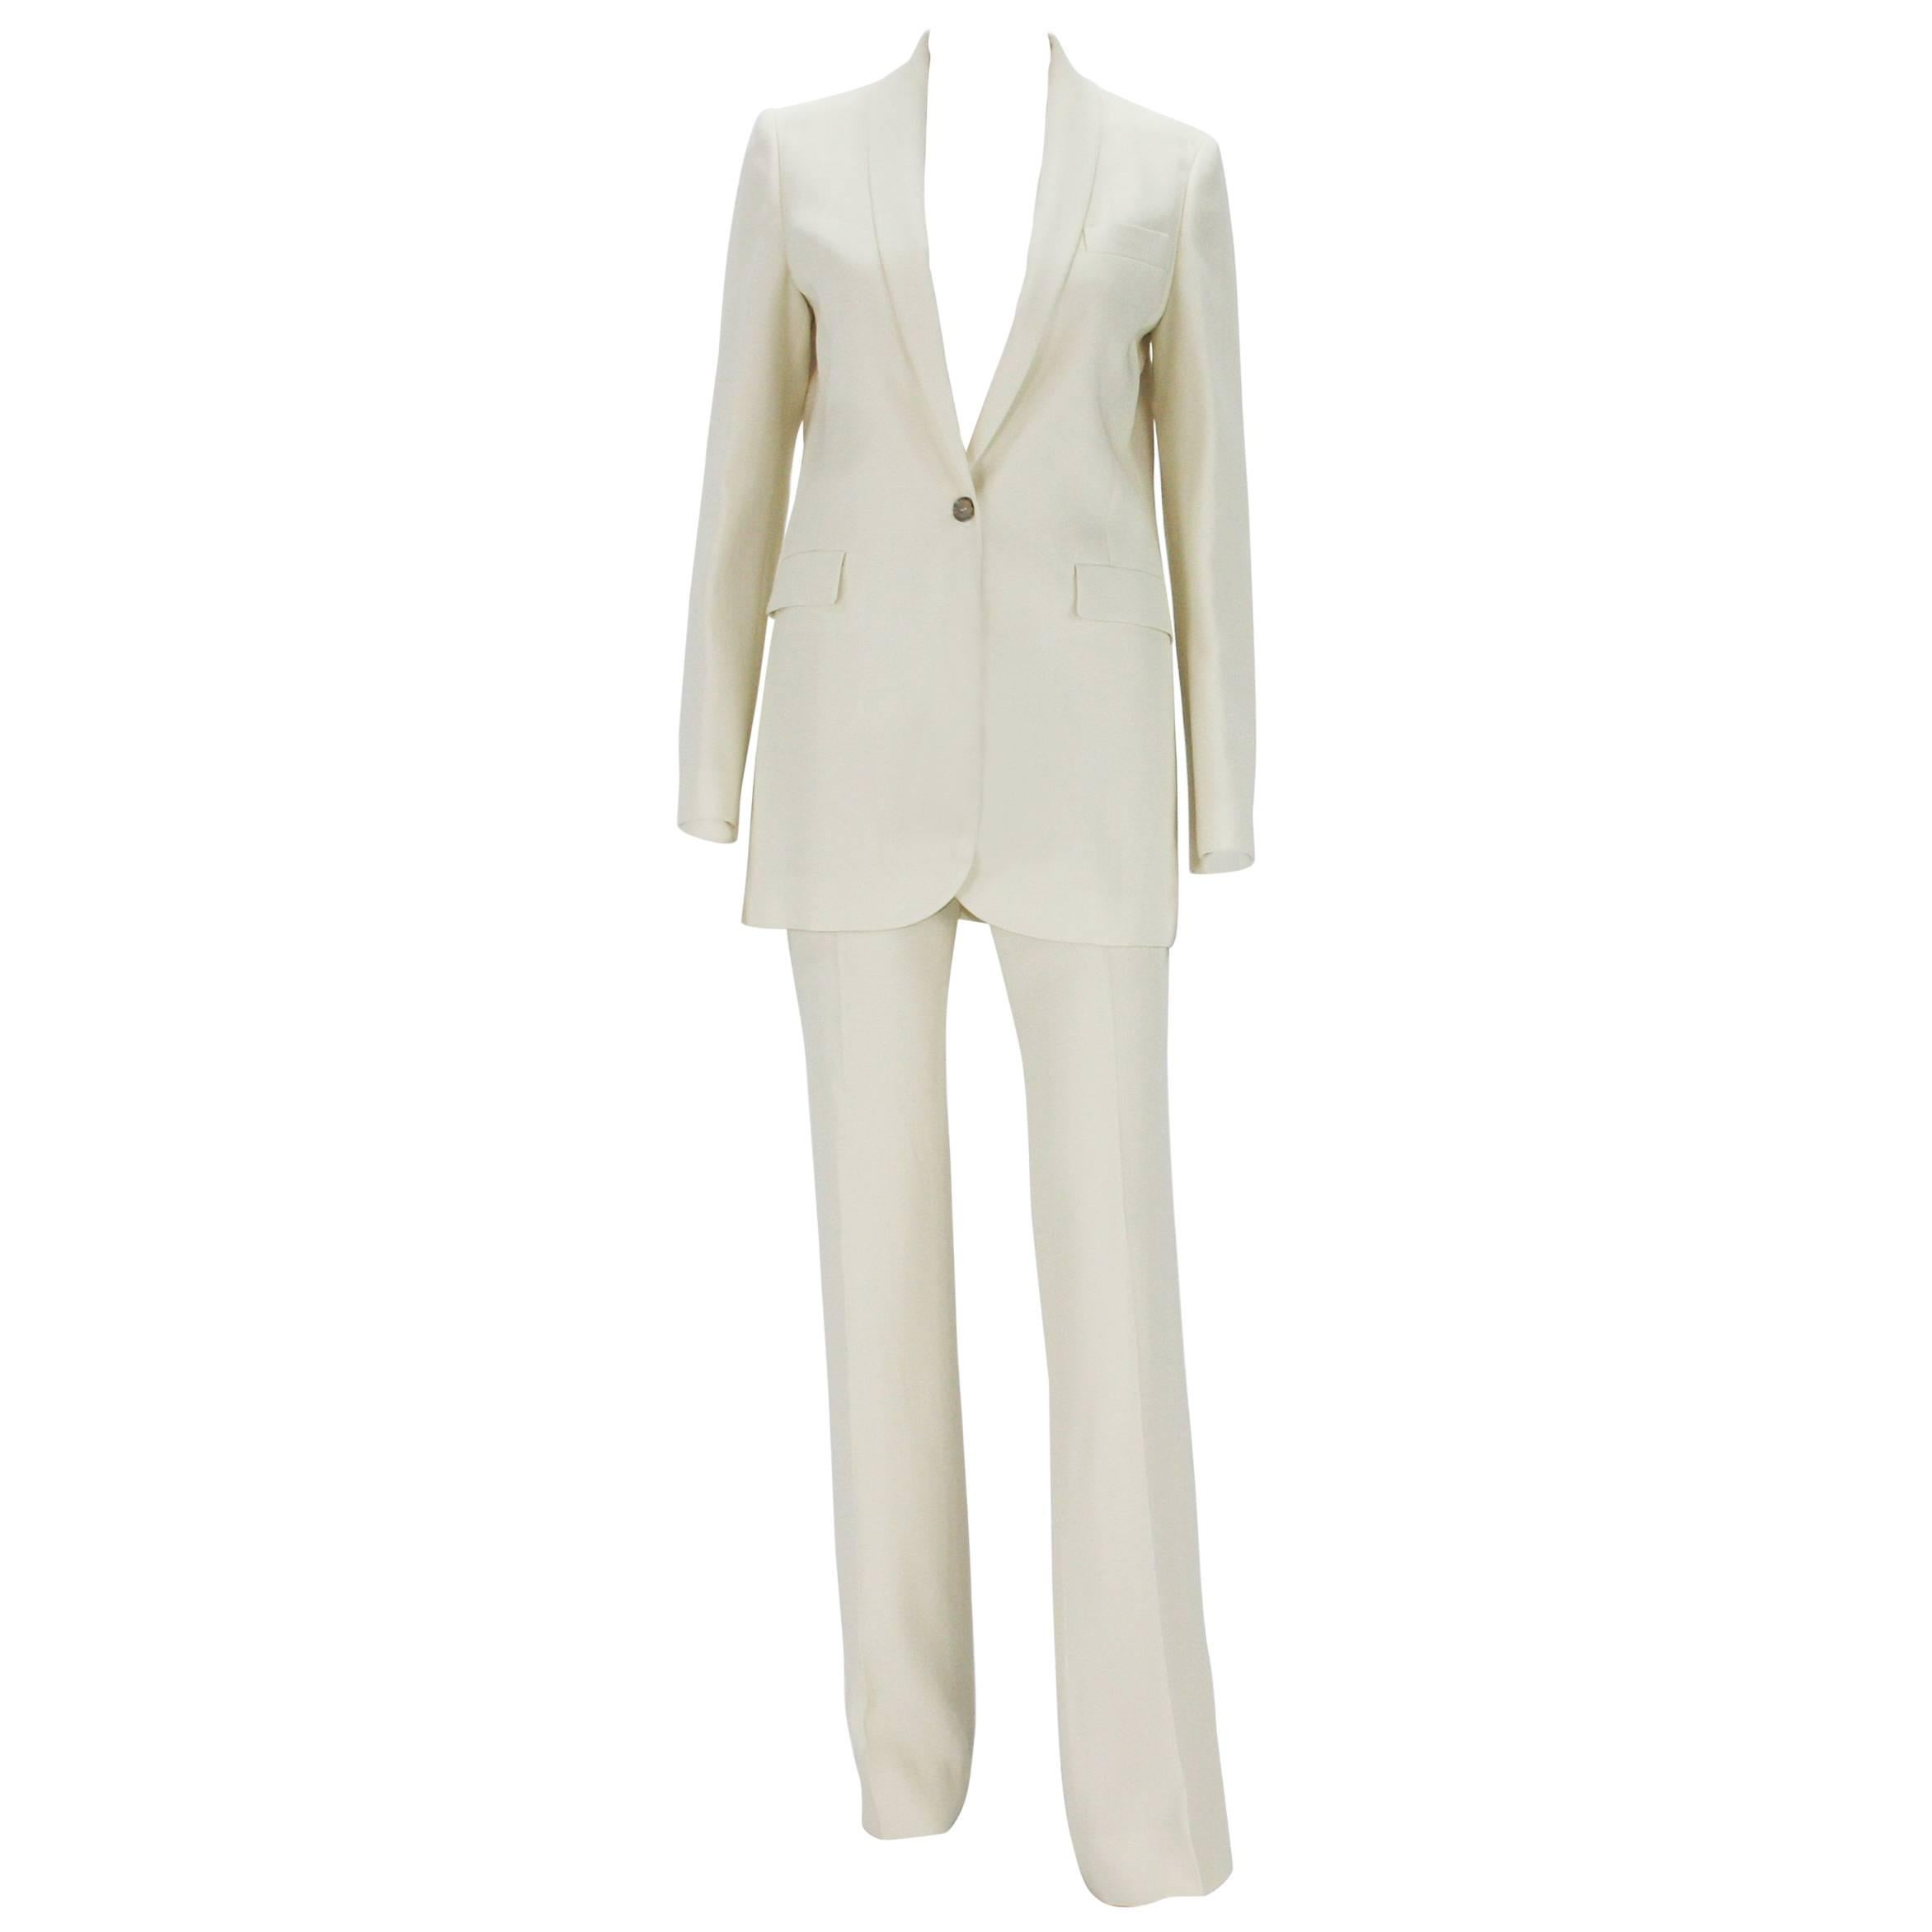 New $2760 GUCCI Alabaster Satin Women's Pant Suit It. 40 - US 4